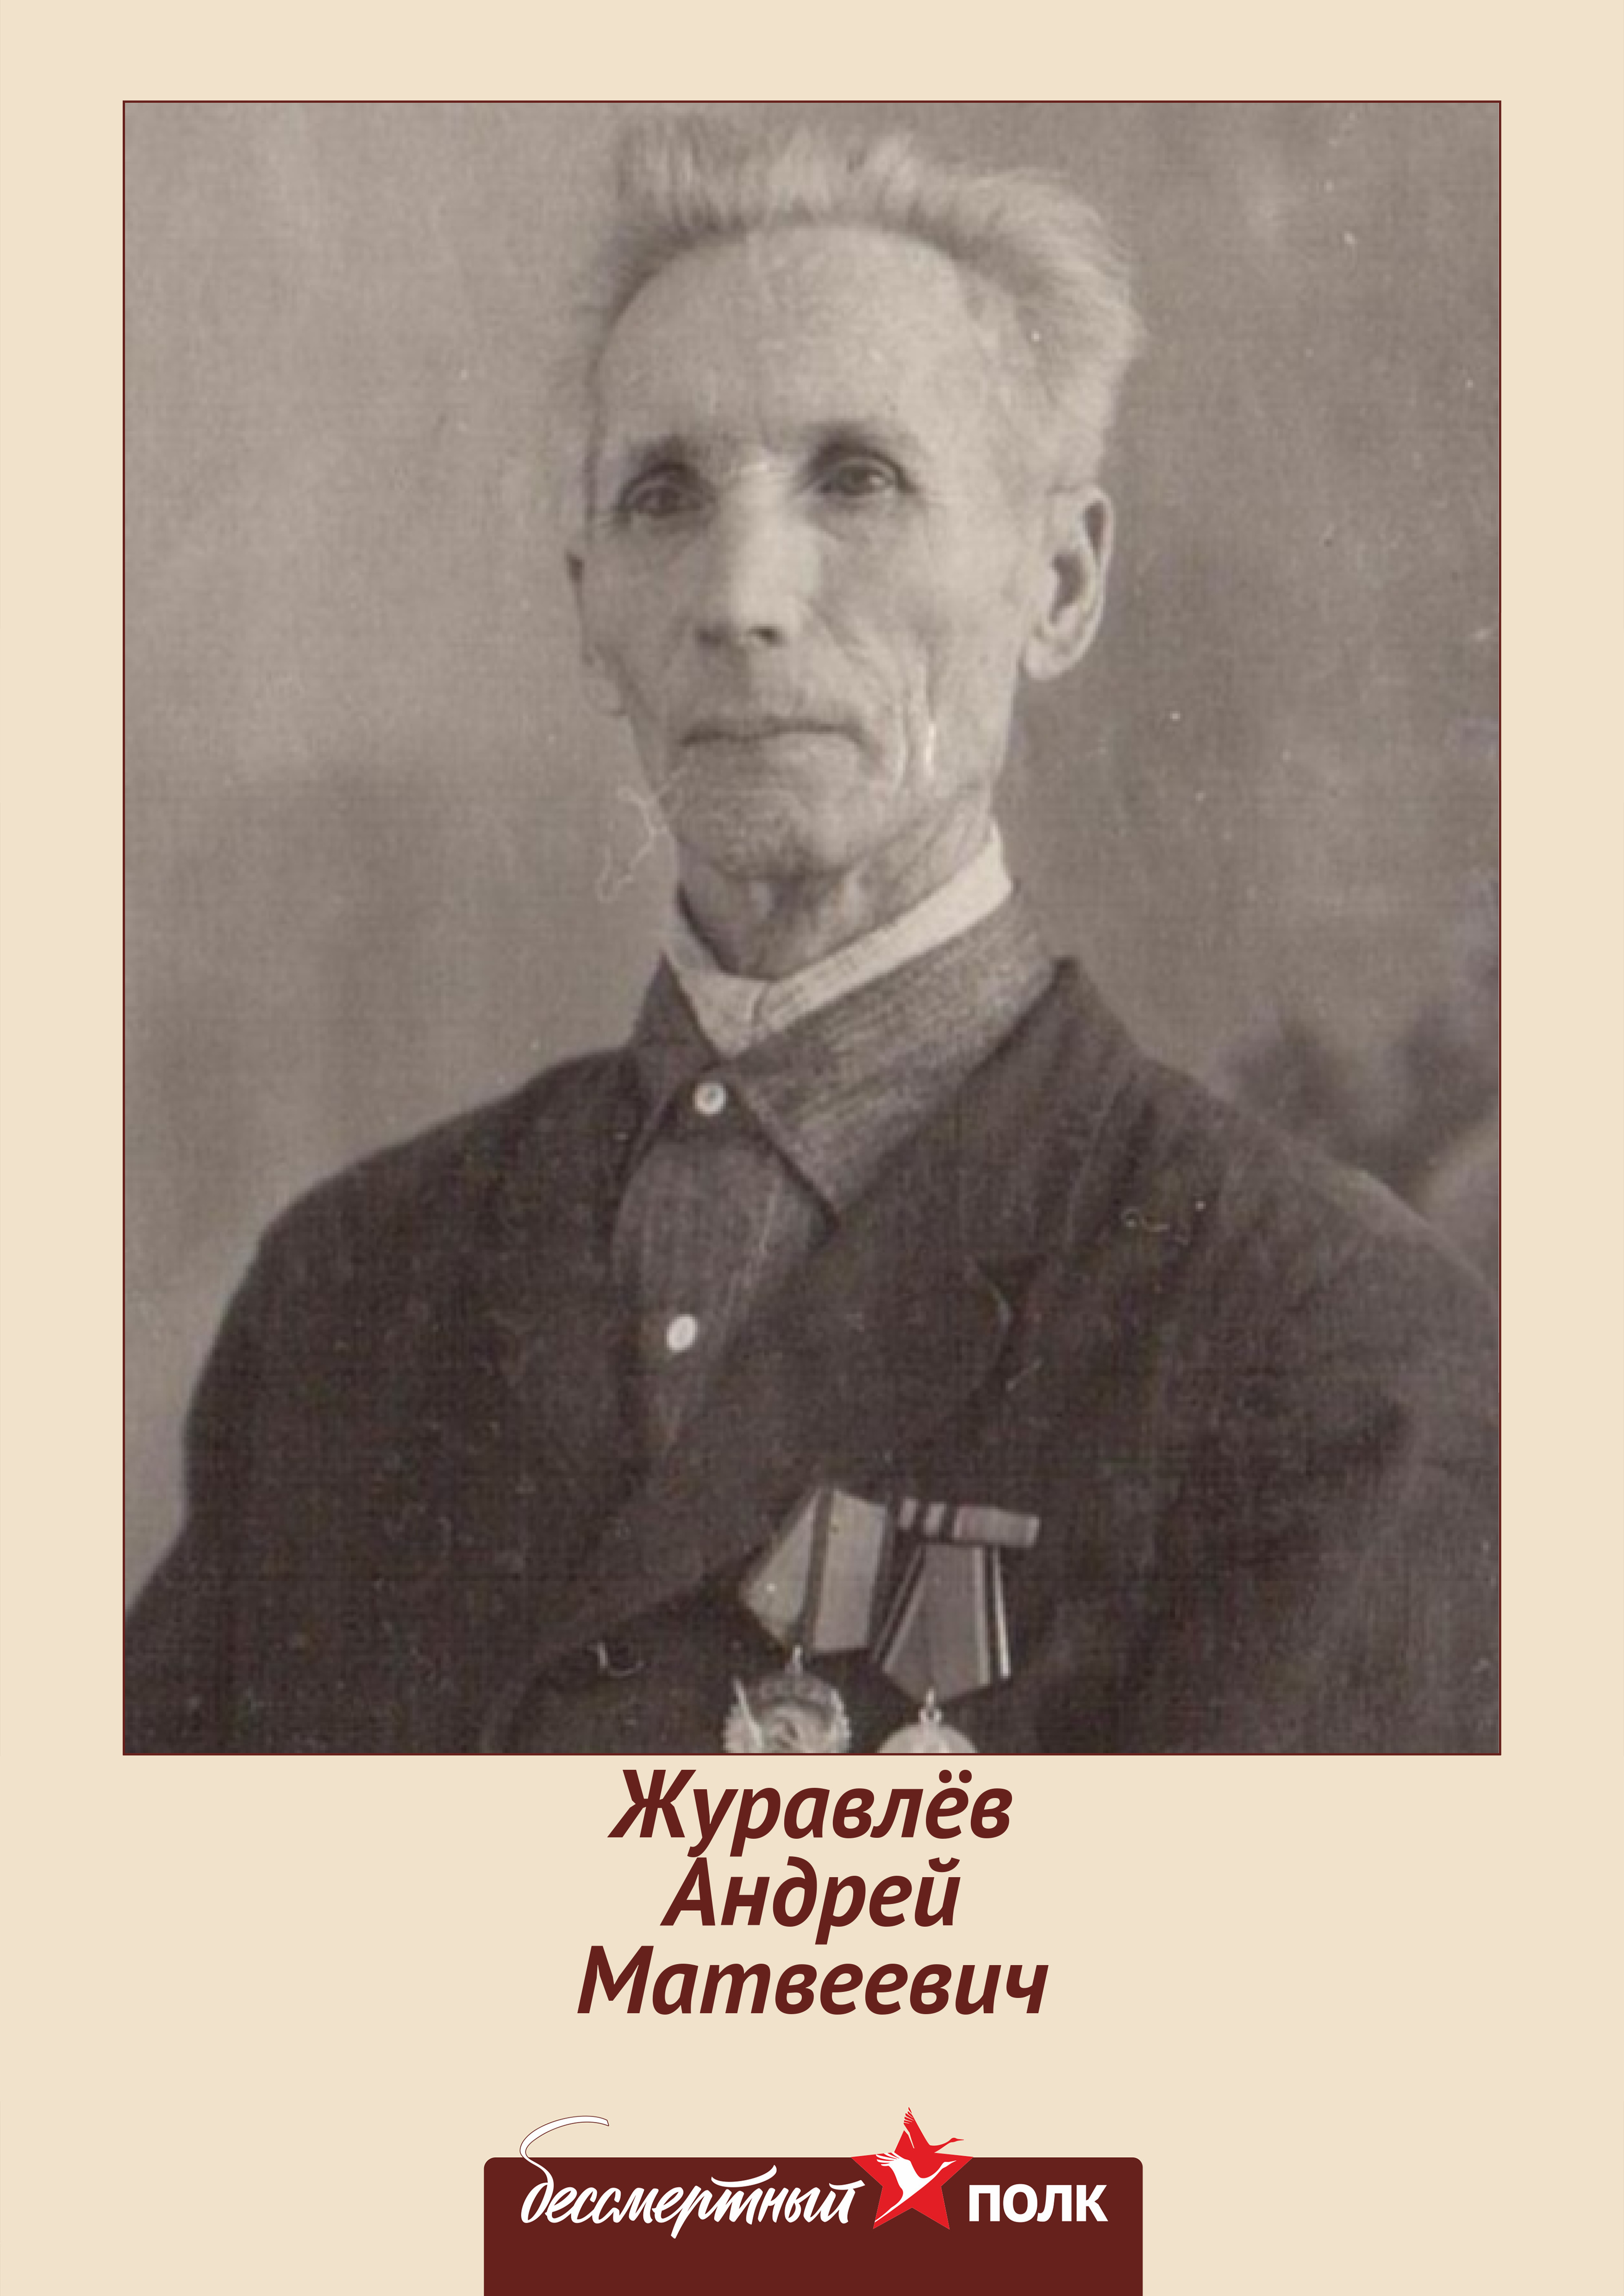 Журавлёв Андрей Матвеевич.